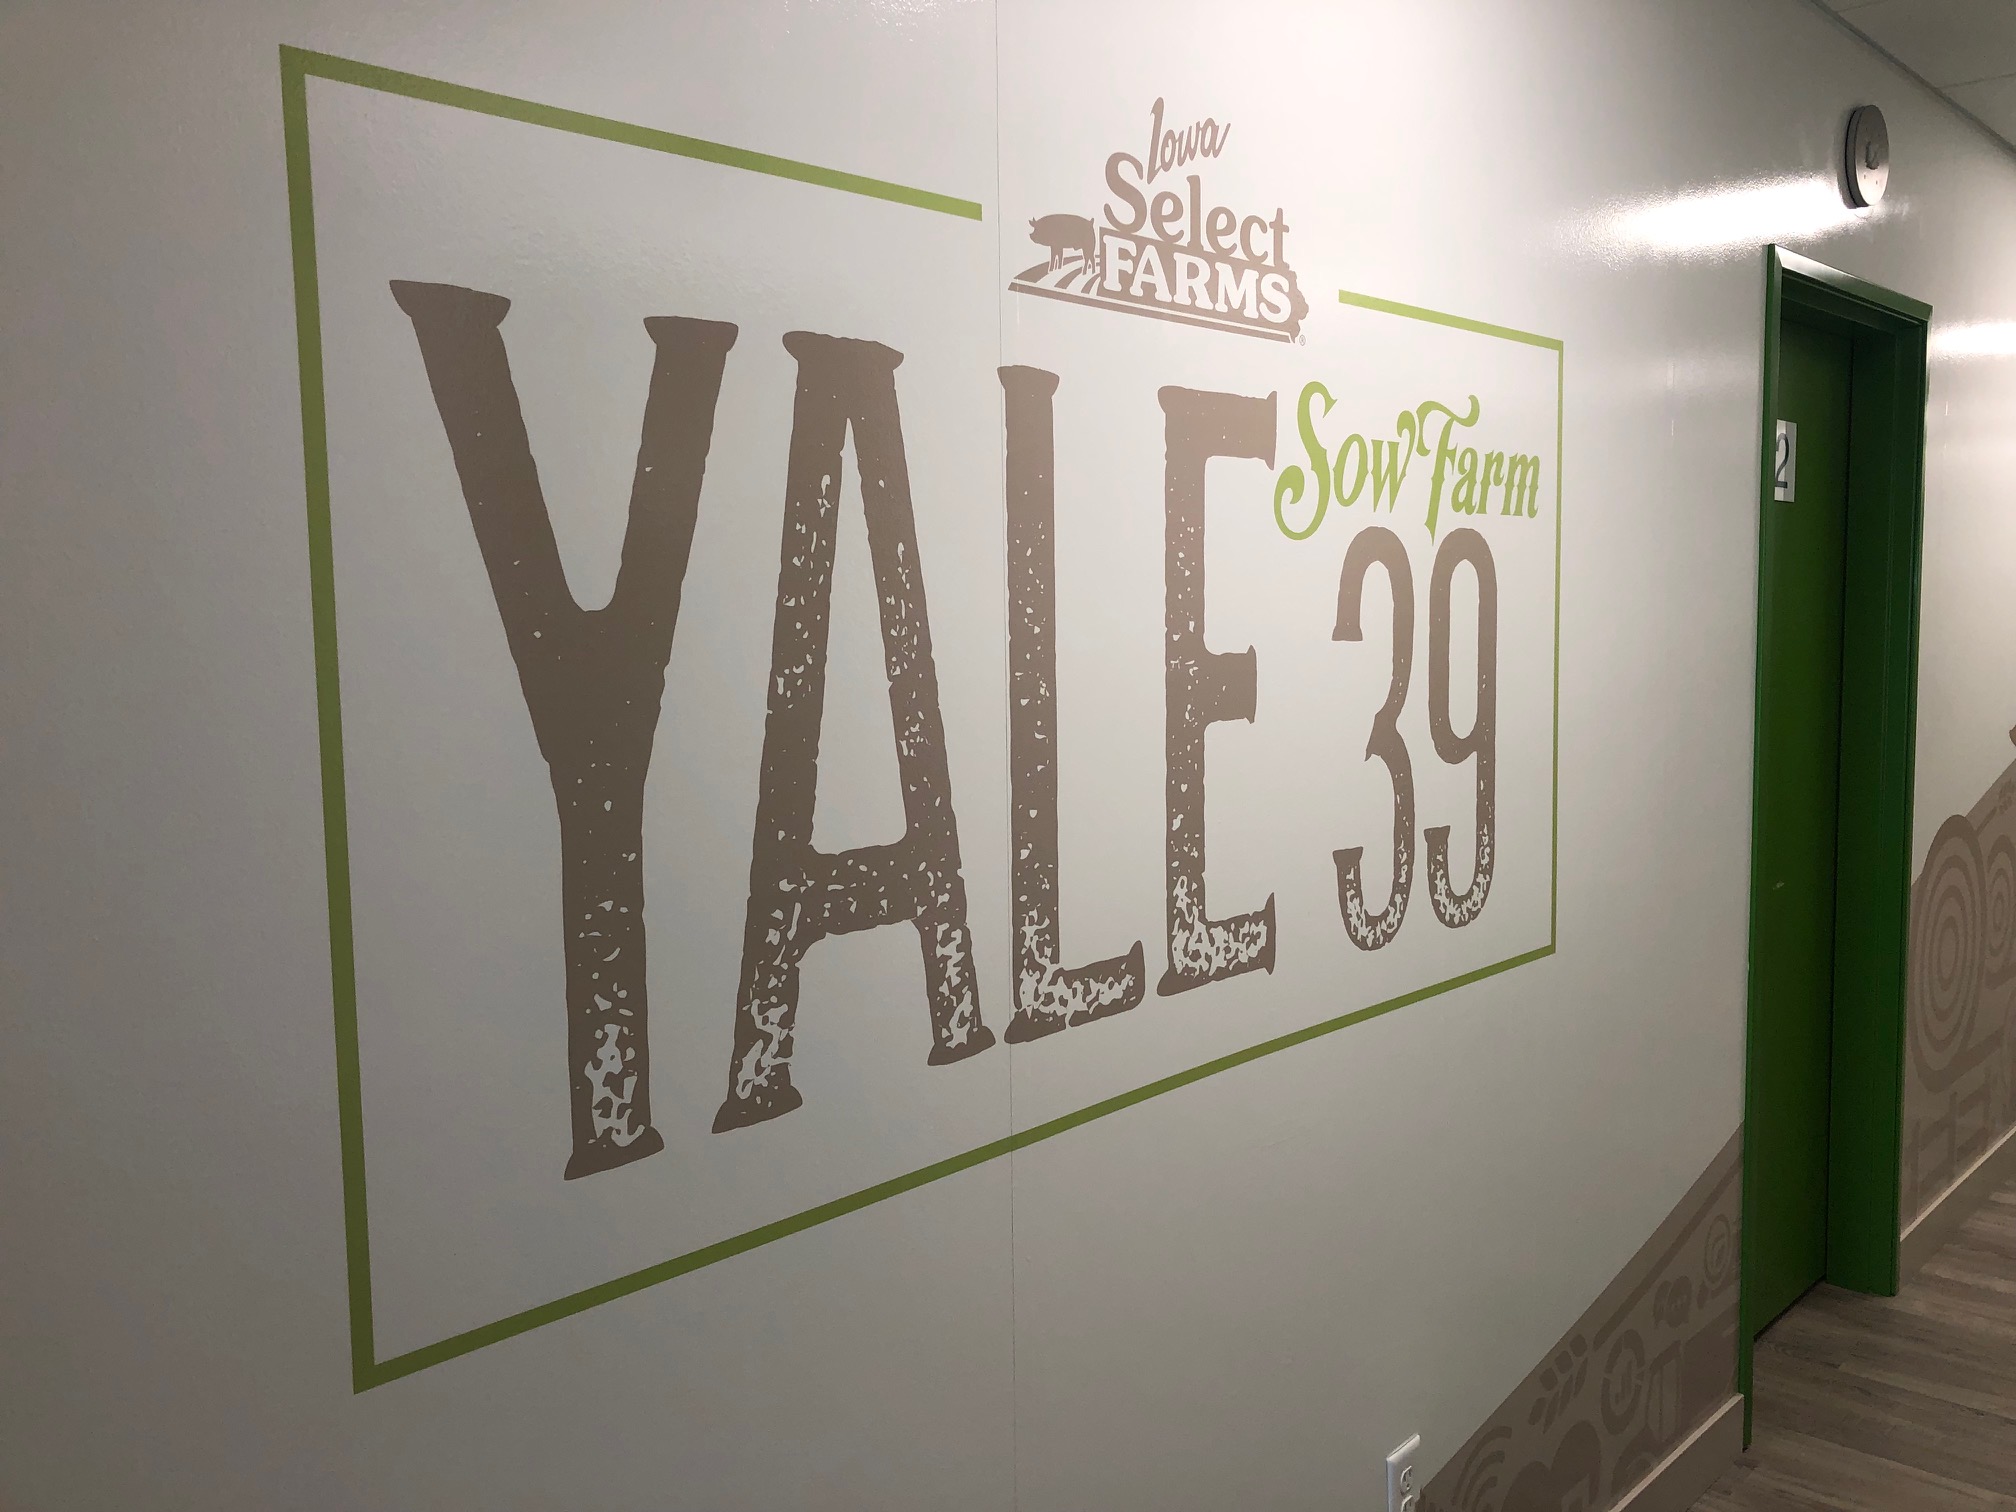 Yale— Sow Farm 39